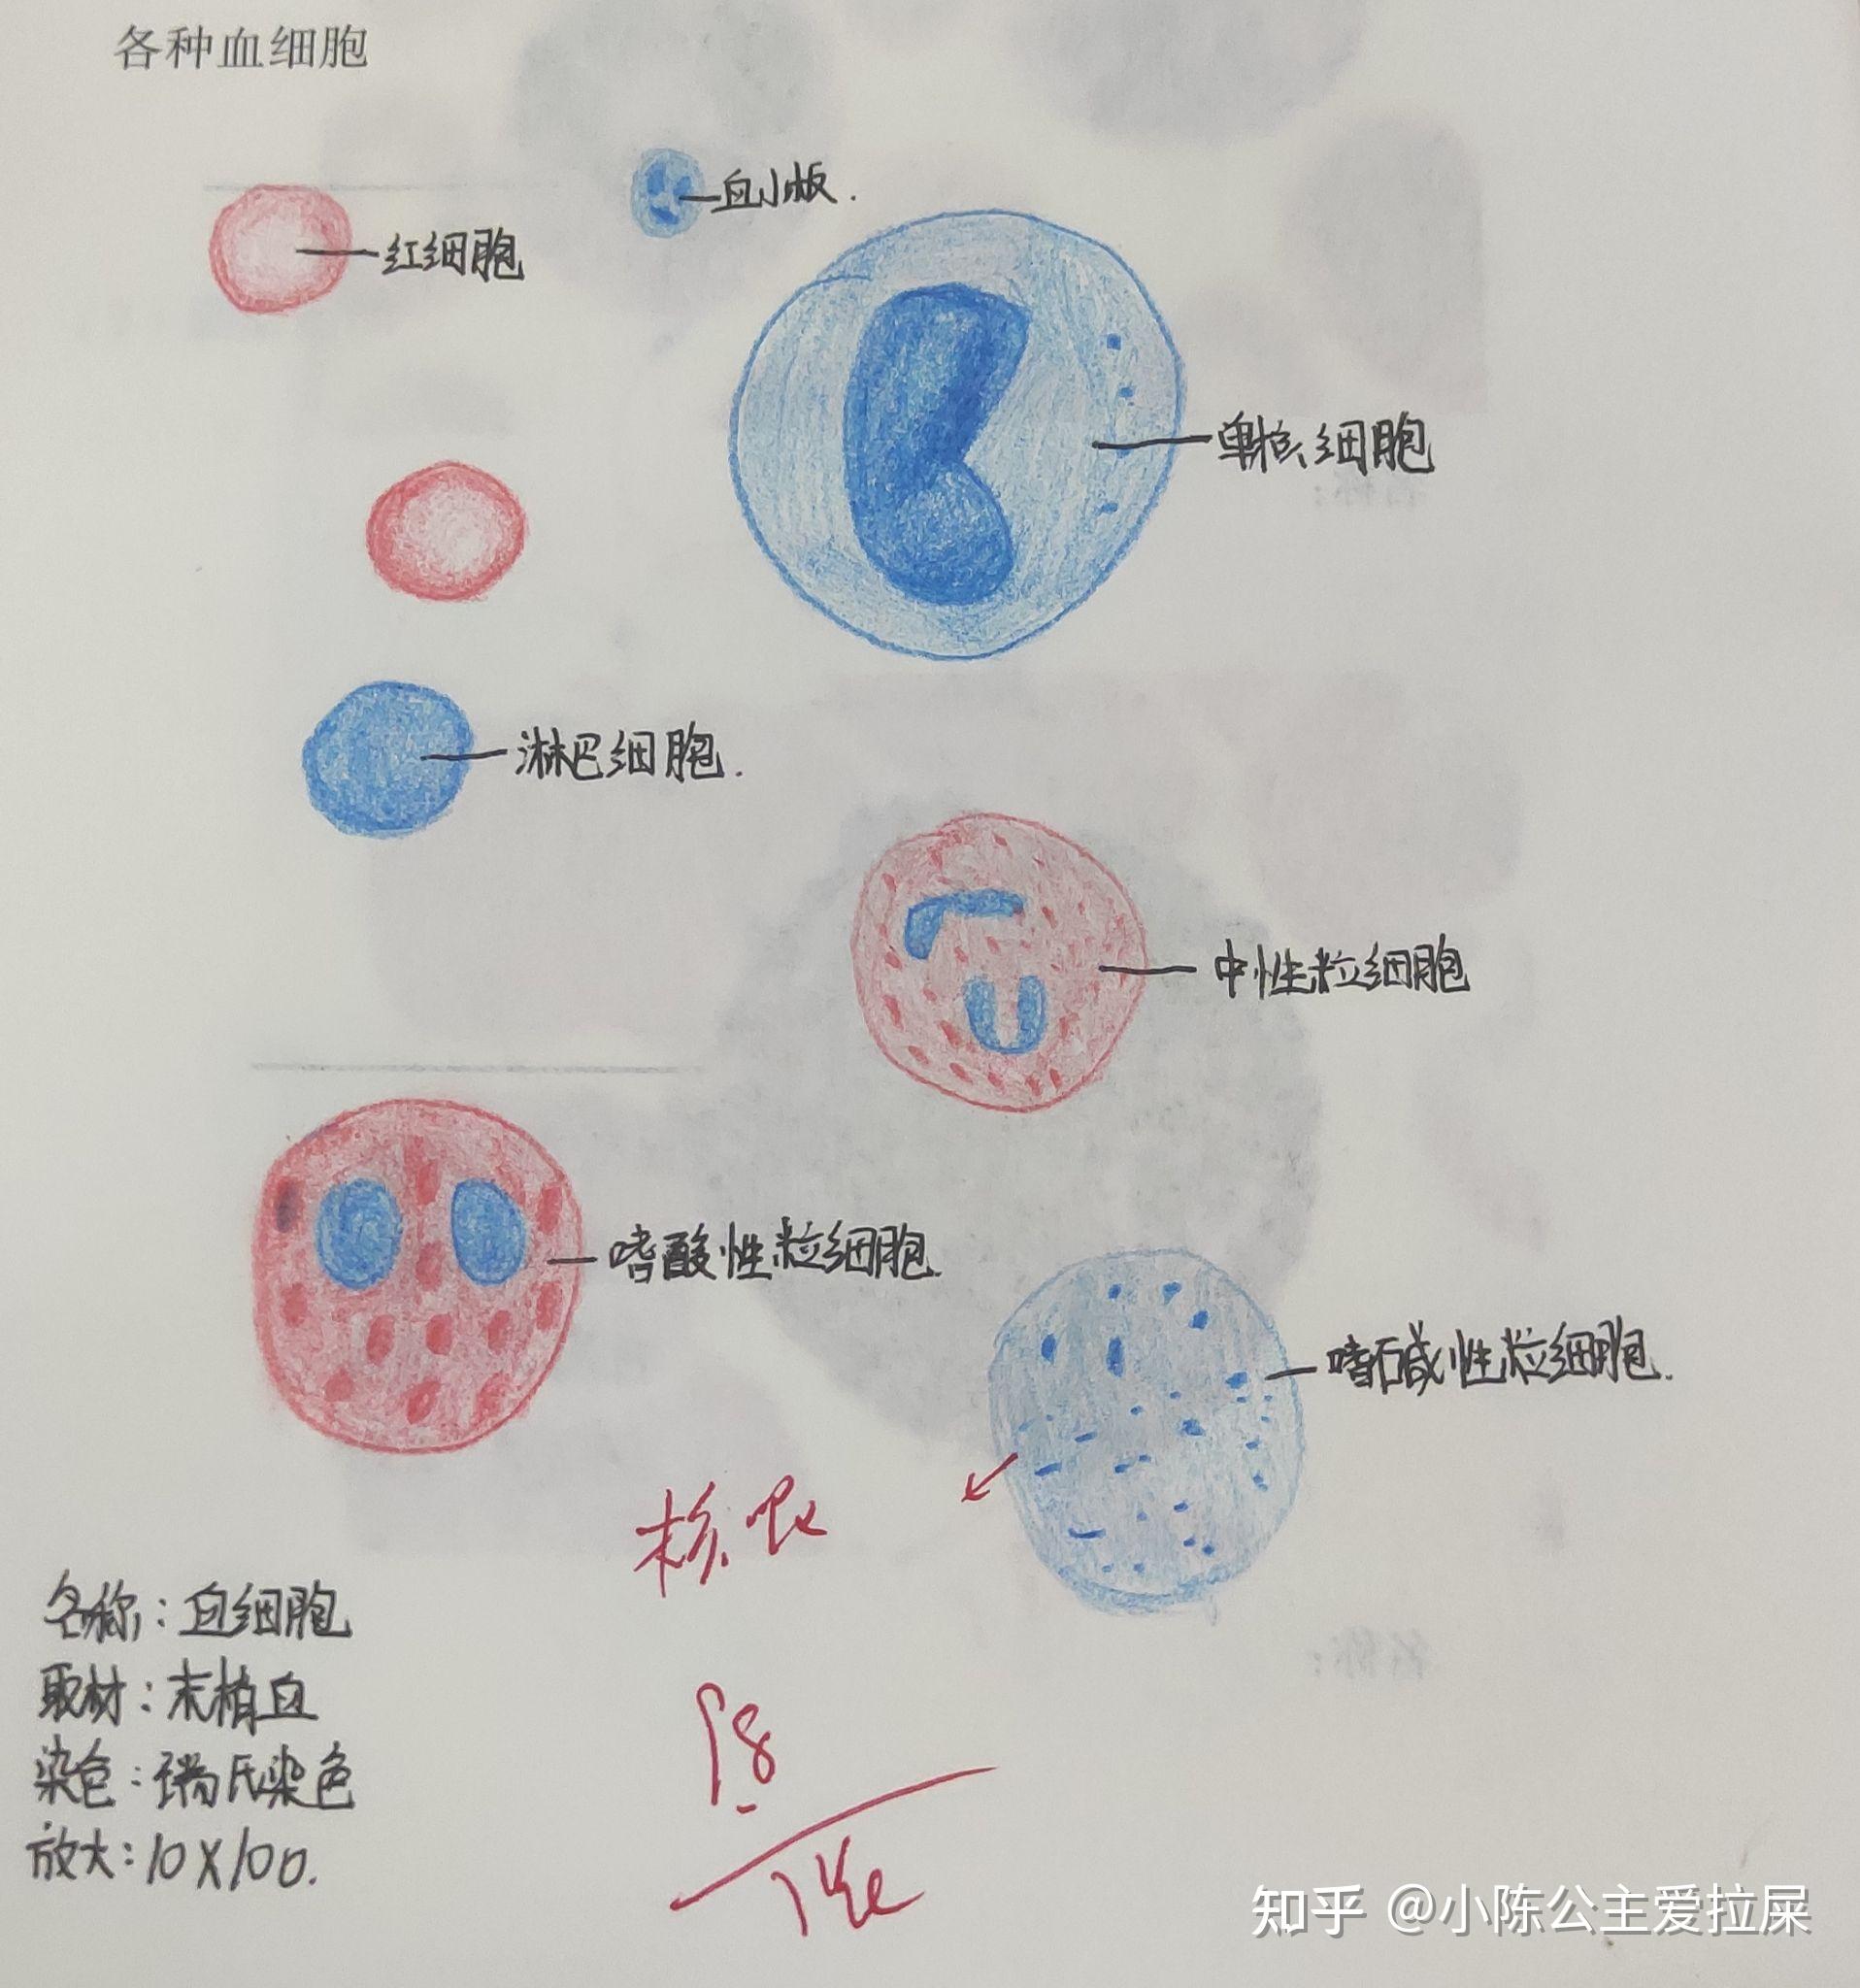 组胚红蓝铅笔绘图